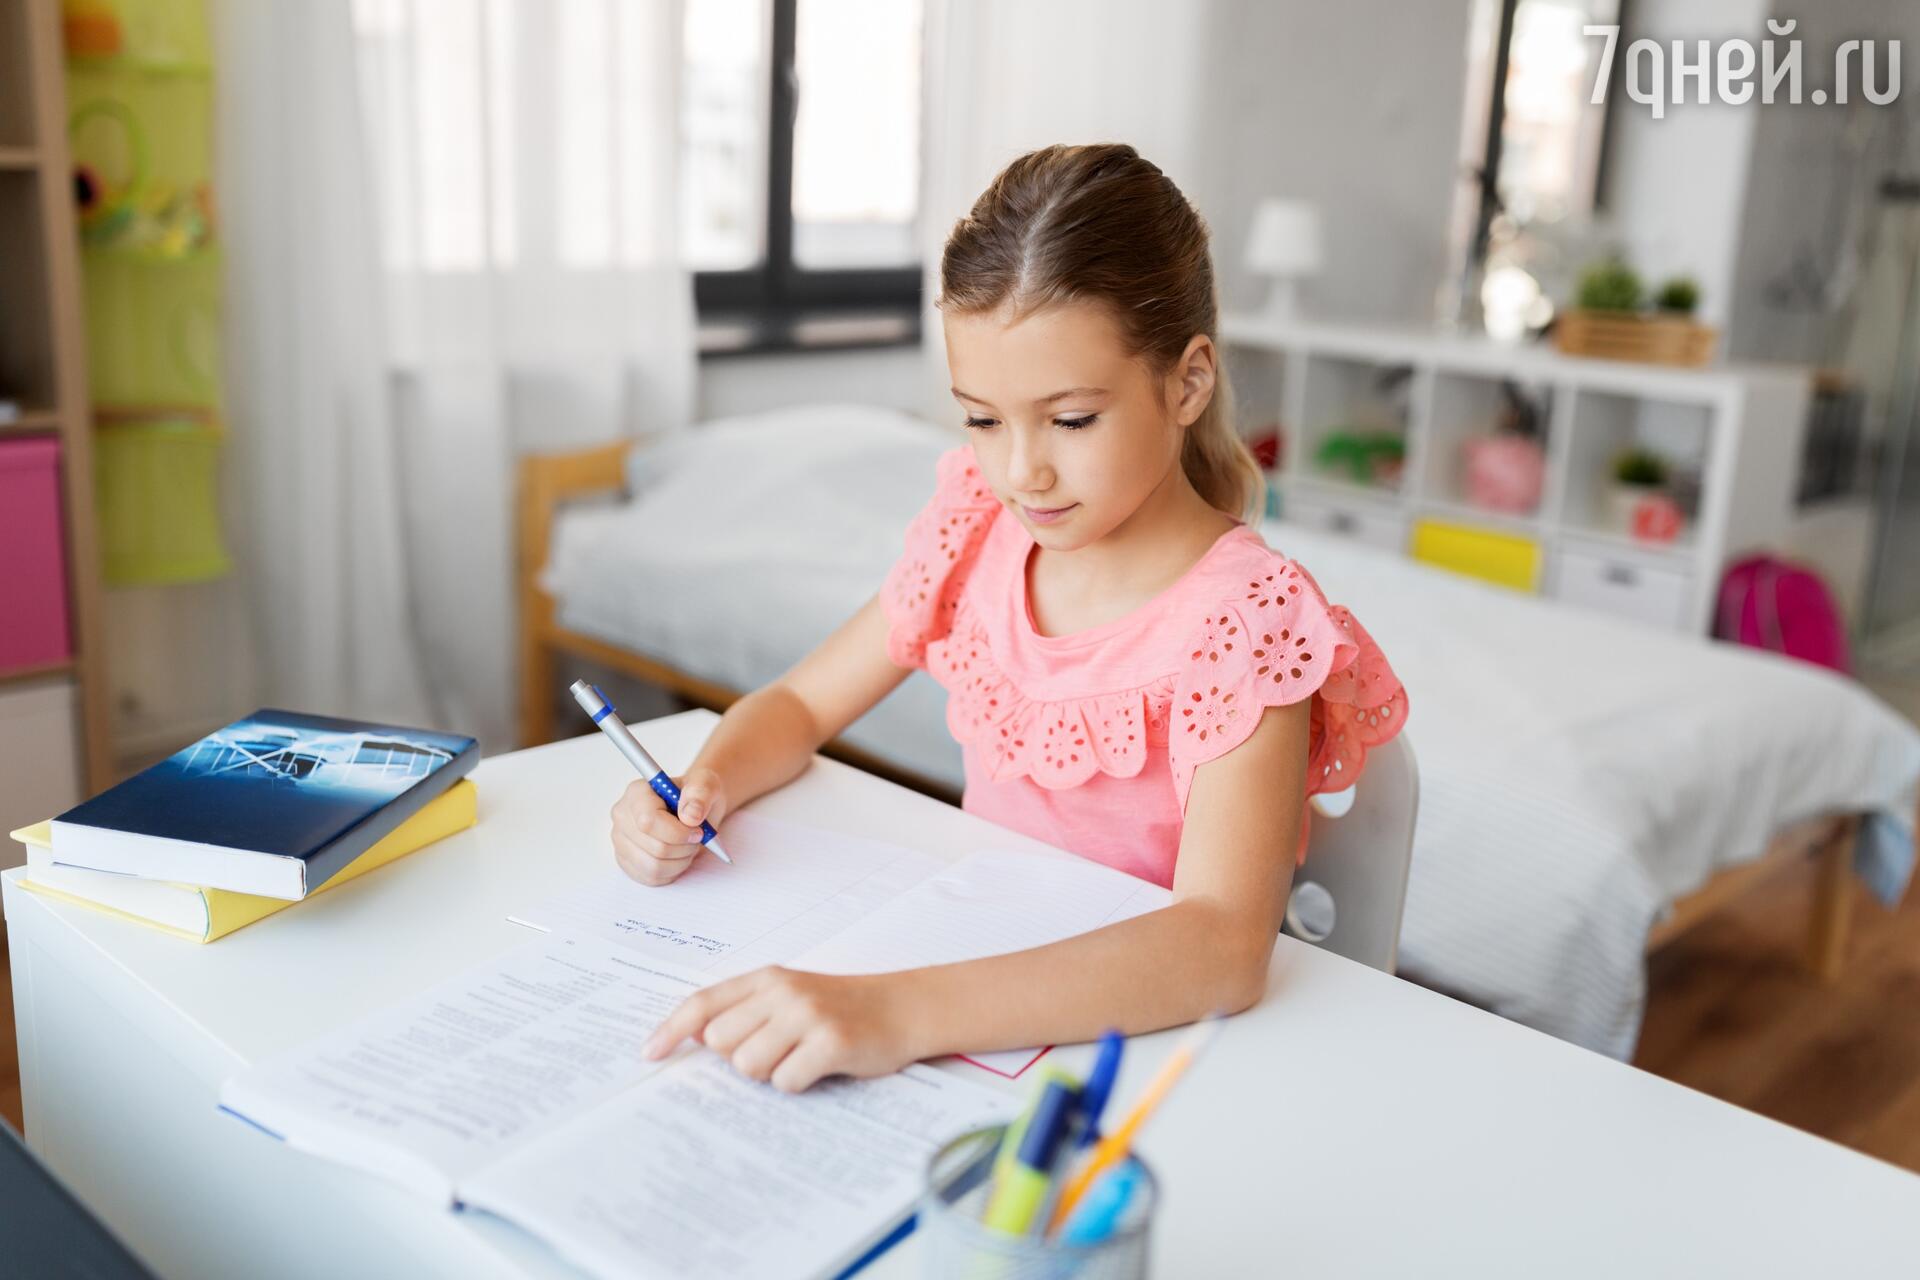 Как быть, если ребенок отказывается и не хочет делать домашнее задание?